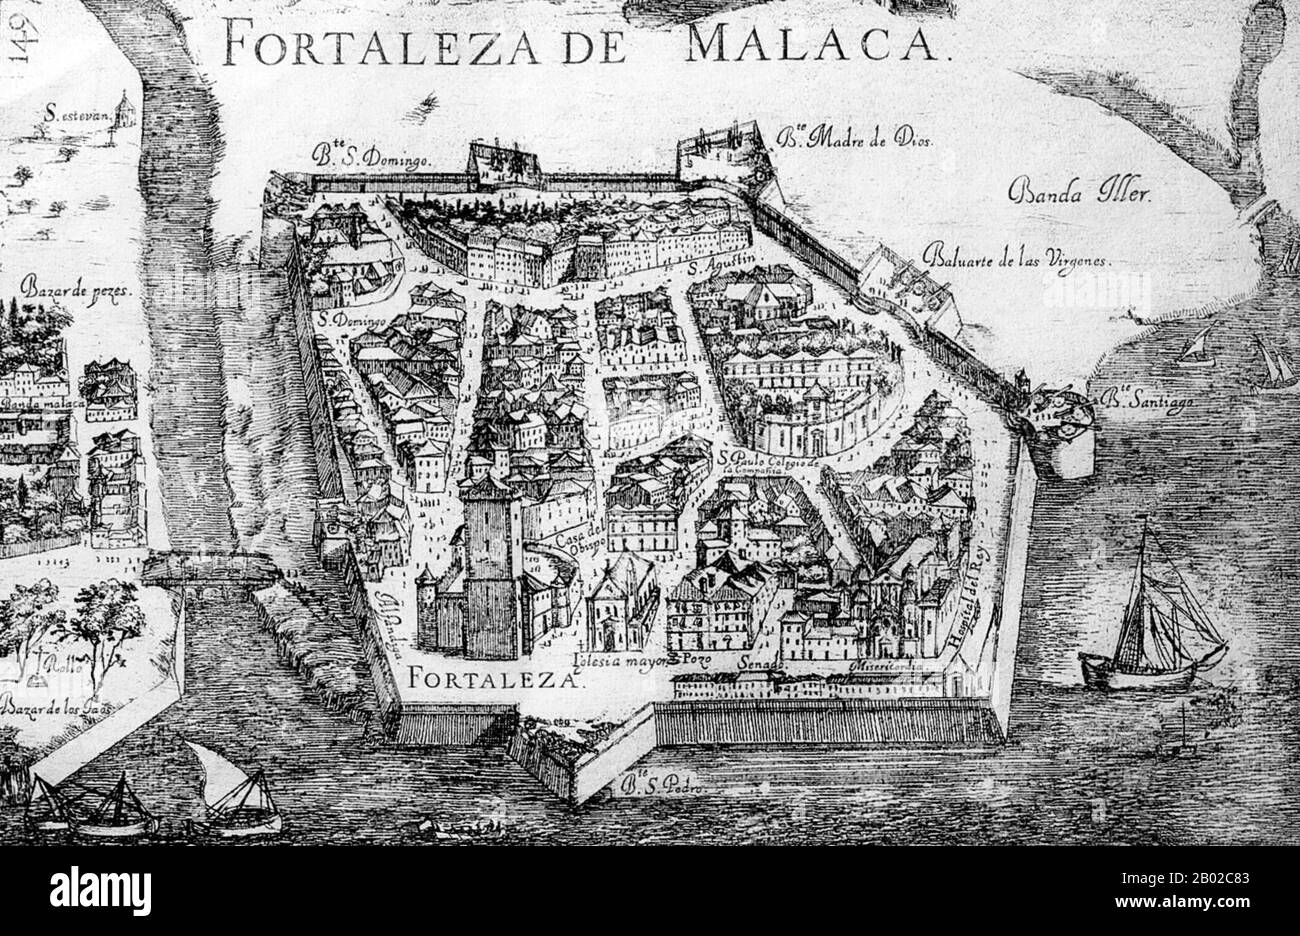 En abril de 1511, el conquistador portugués Afonso de Albuquerque zarpó de Goa a Malacca con una fuerza de unos 1,200 hombres en una flota de 17 o 18 barcos. Conquistaron la ciudad el 24 de agosto de 1511, y el Sultán Mahmud Shah, el último Sultán de Malaca, tuvo que refugiarse en el interior. Malacca se convirtió en una base estratégica para la expansión portuguesa en las Indias Orientales donde podrían explotar el comercio de especias. En 1641, los holandeses derrotaron a los portugueses con la ayuda del Sultán de Johore. Los holandeses gobernaron Malacca de 1641 a 1798, pero no estaban interesados en desarrollarla como centro comercial, Loc Foto de stock